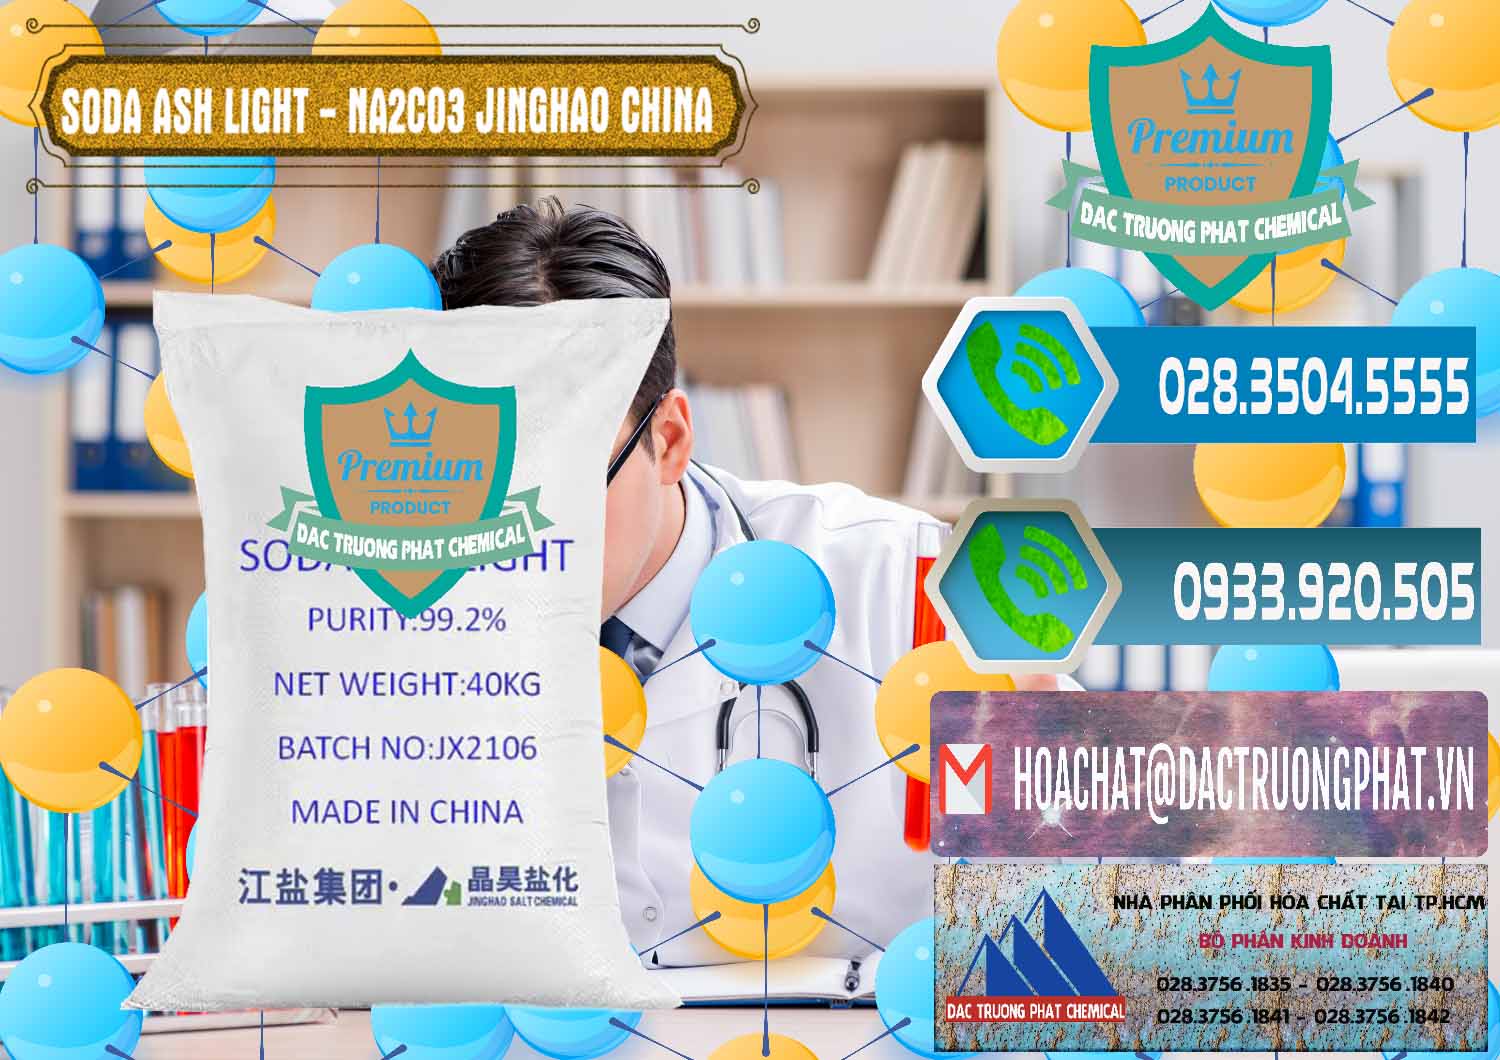 Cty chuyên bán và cung cấp Soda Ash Light - NA2CO3 Jinghao Trung Quốc China - 0339 - Công ty kinh doanh - cung cấp hóa chất tại TP.HCM - congtyhoachat.net